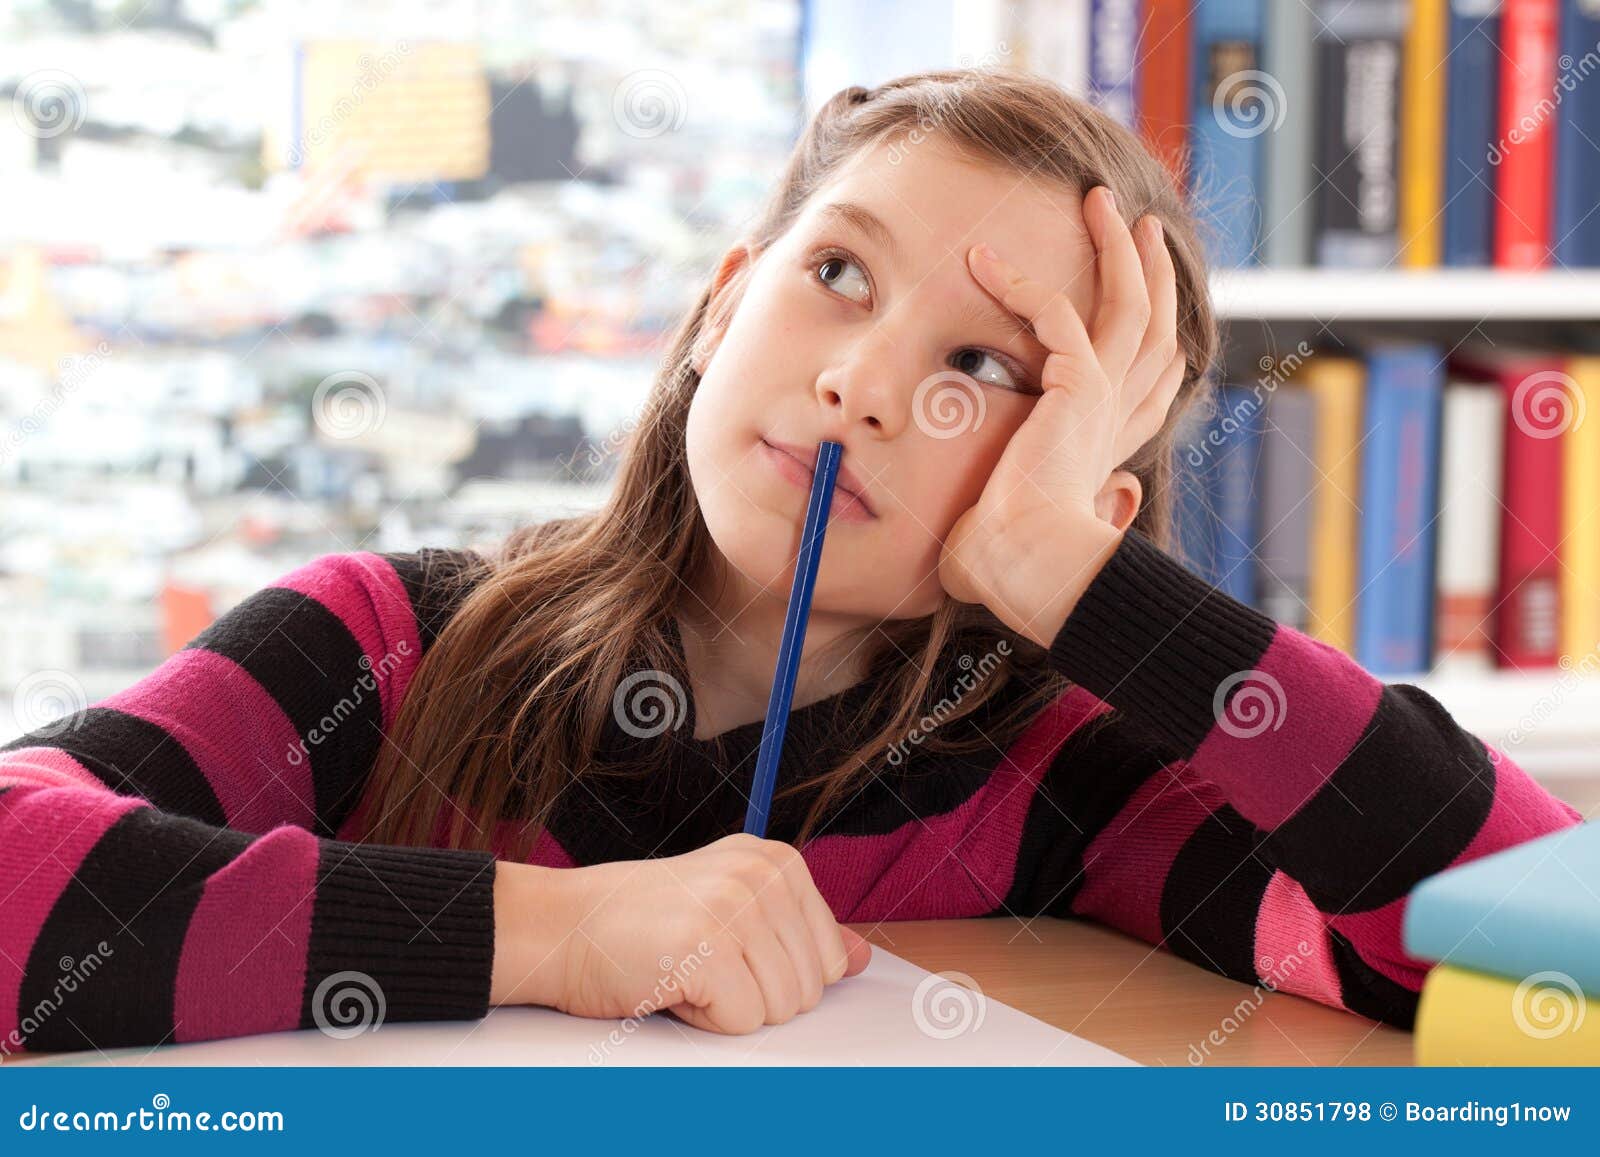 schoolchild thinking while doing homework